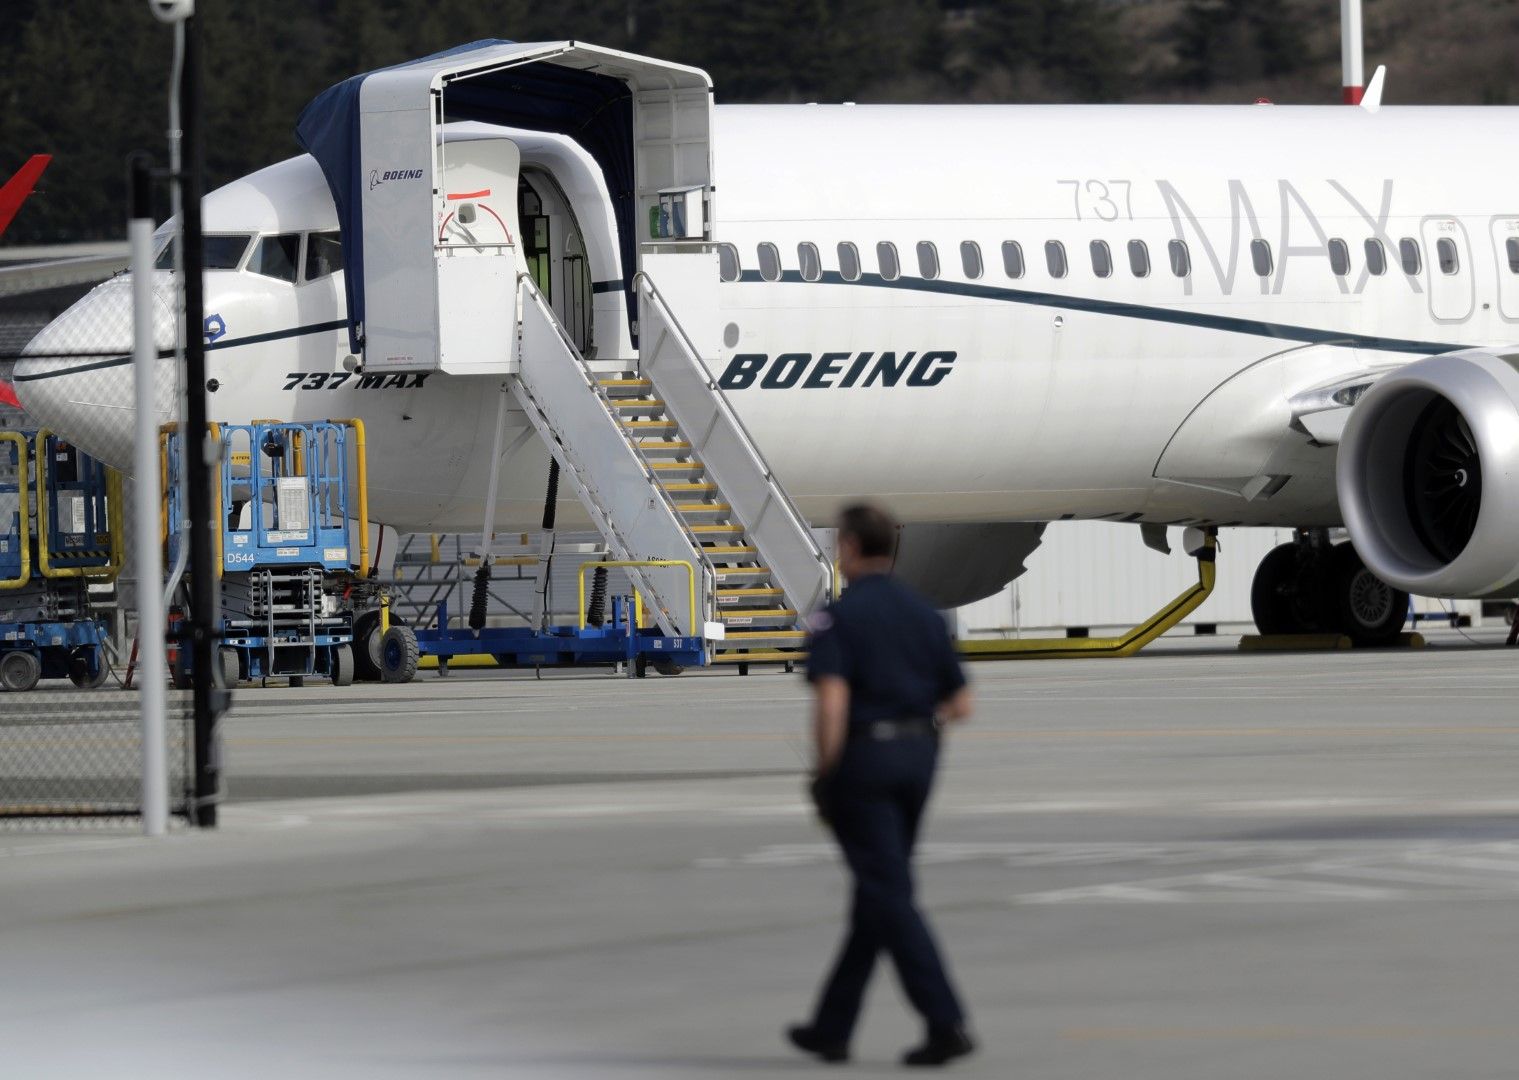 Нискотарифната компания на Саудитска Арабия Флайадийл (Flyadeal) се отказа от намерението си да купи 50 самолета Боинг 737 МАКС